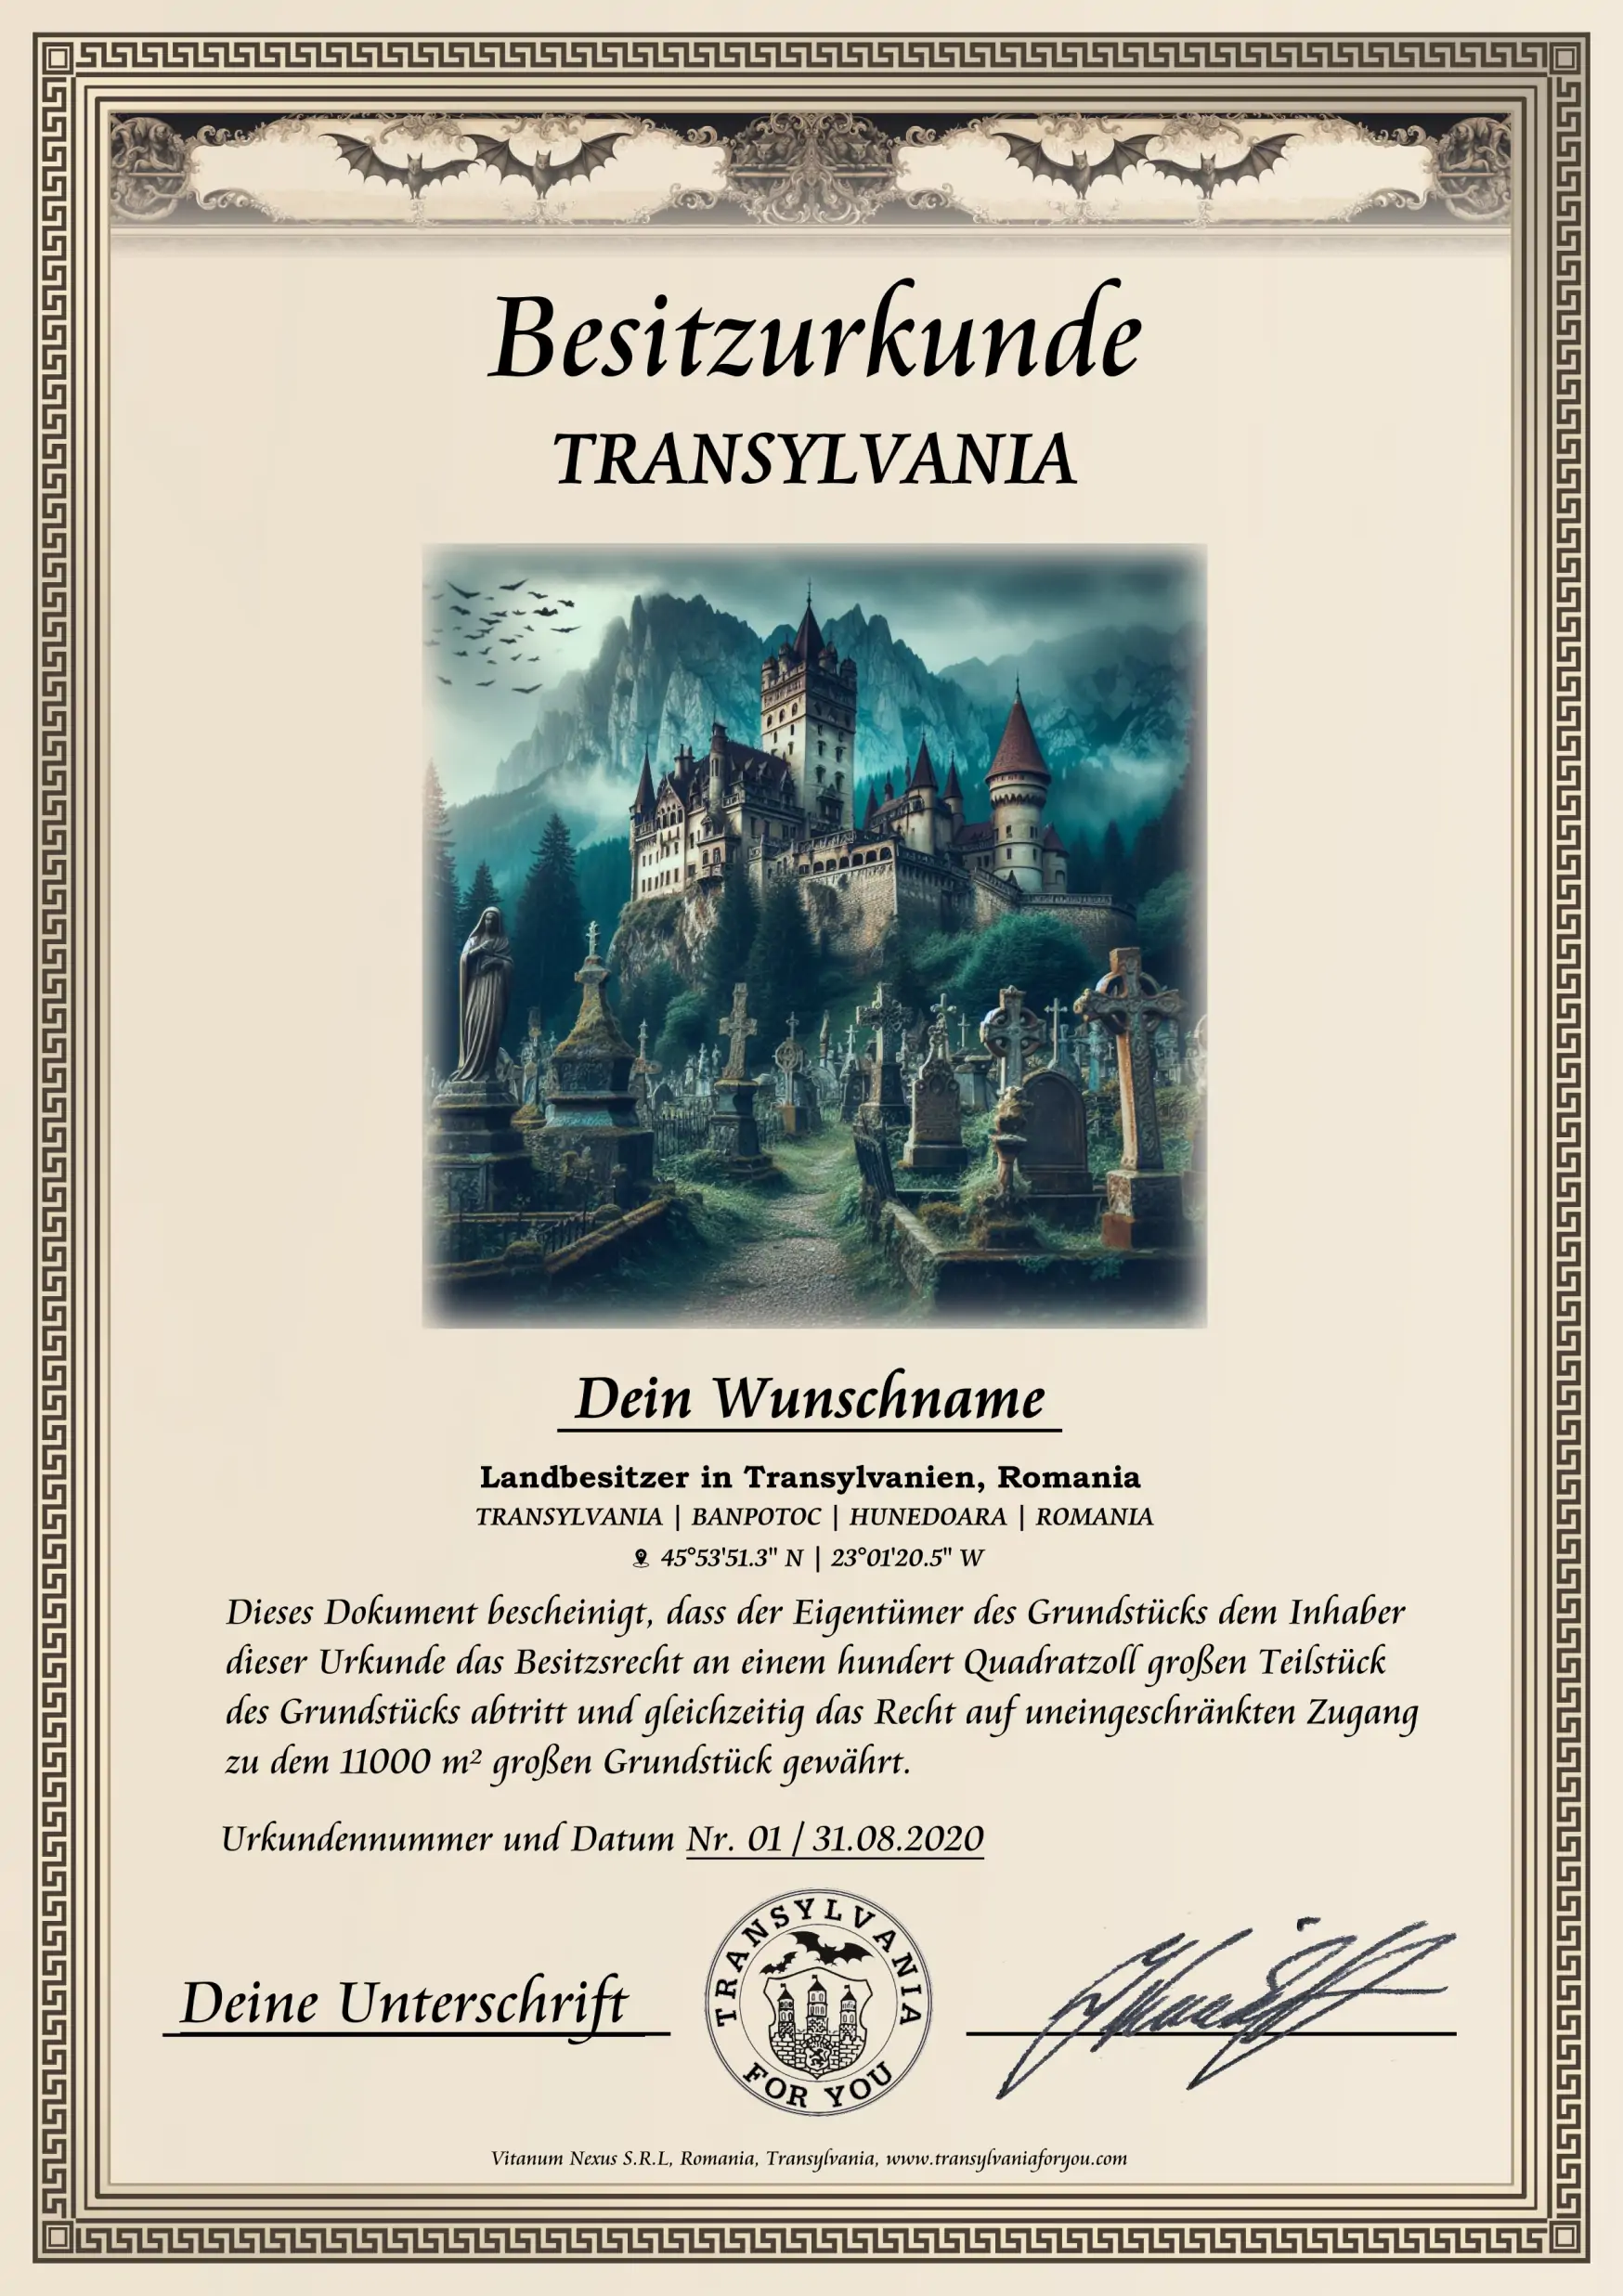 Urkunde mit Bildmotiv: Gothischer Friedhof, Draculaschloss